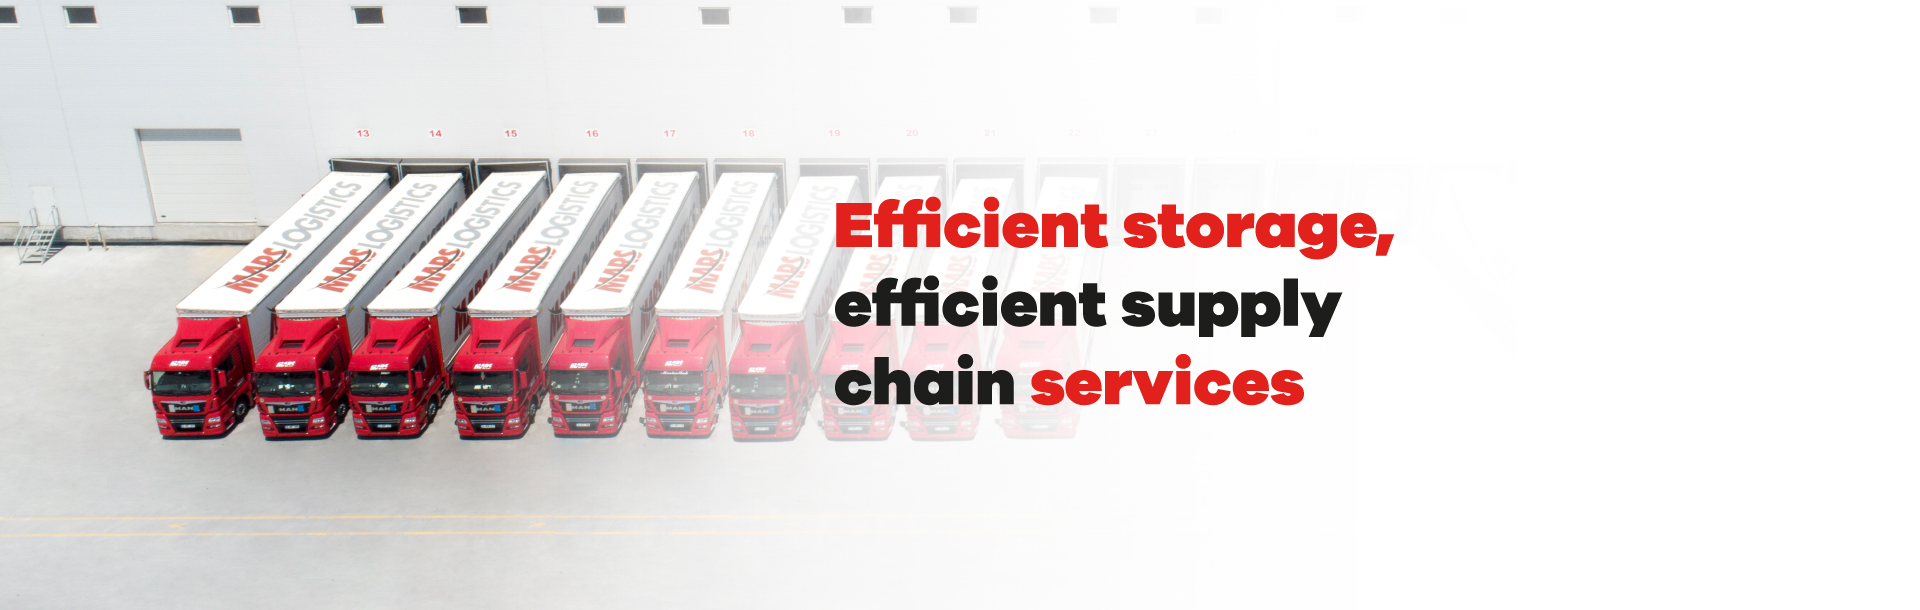 Efficient storage efficient supply chain services